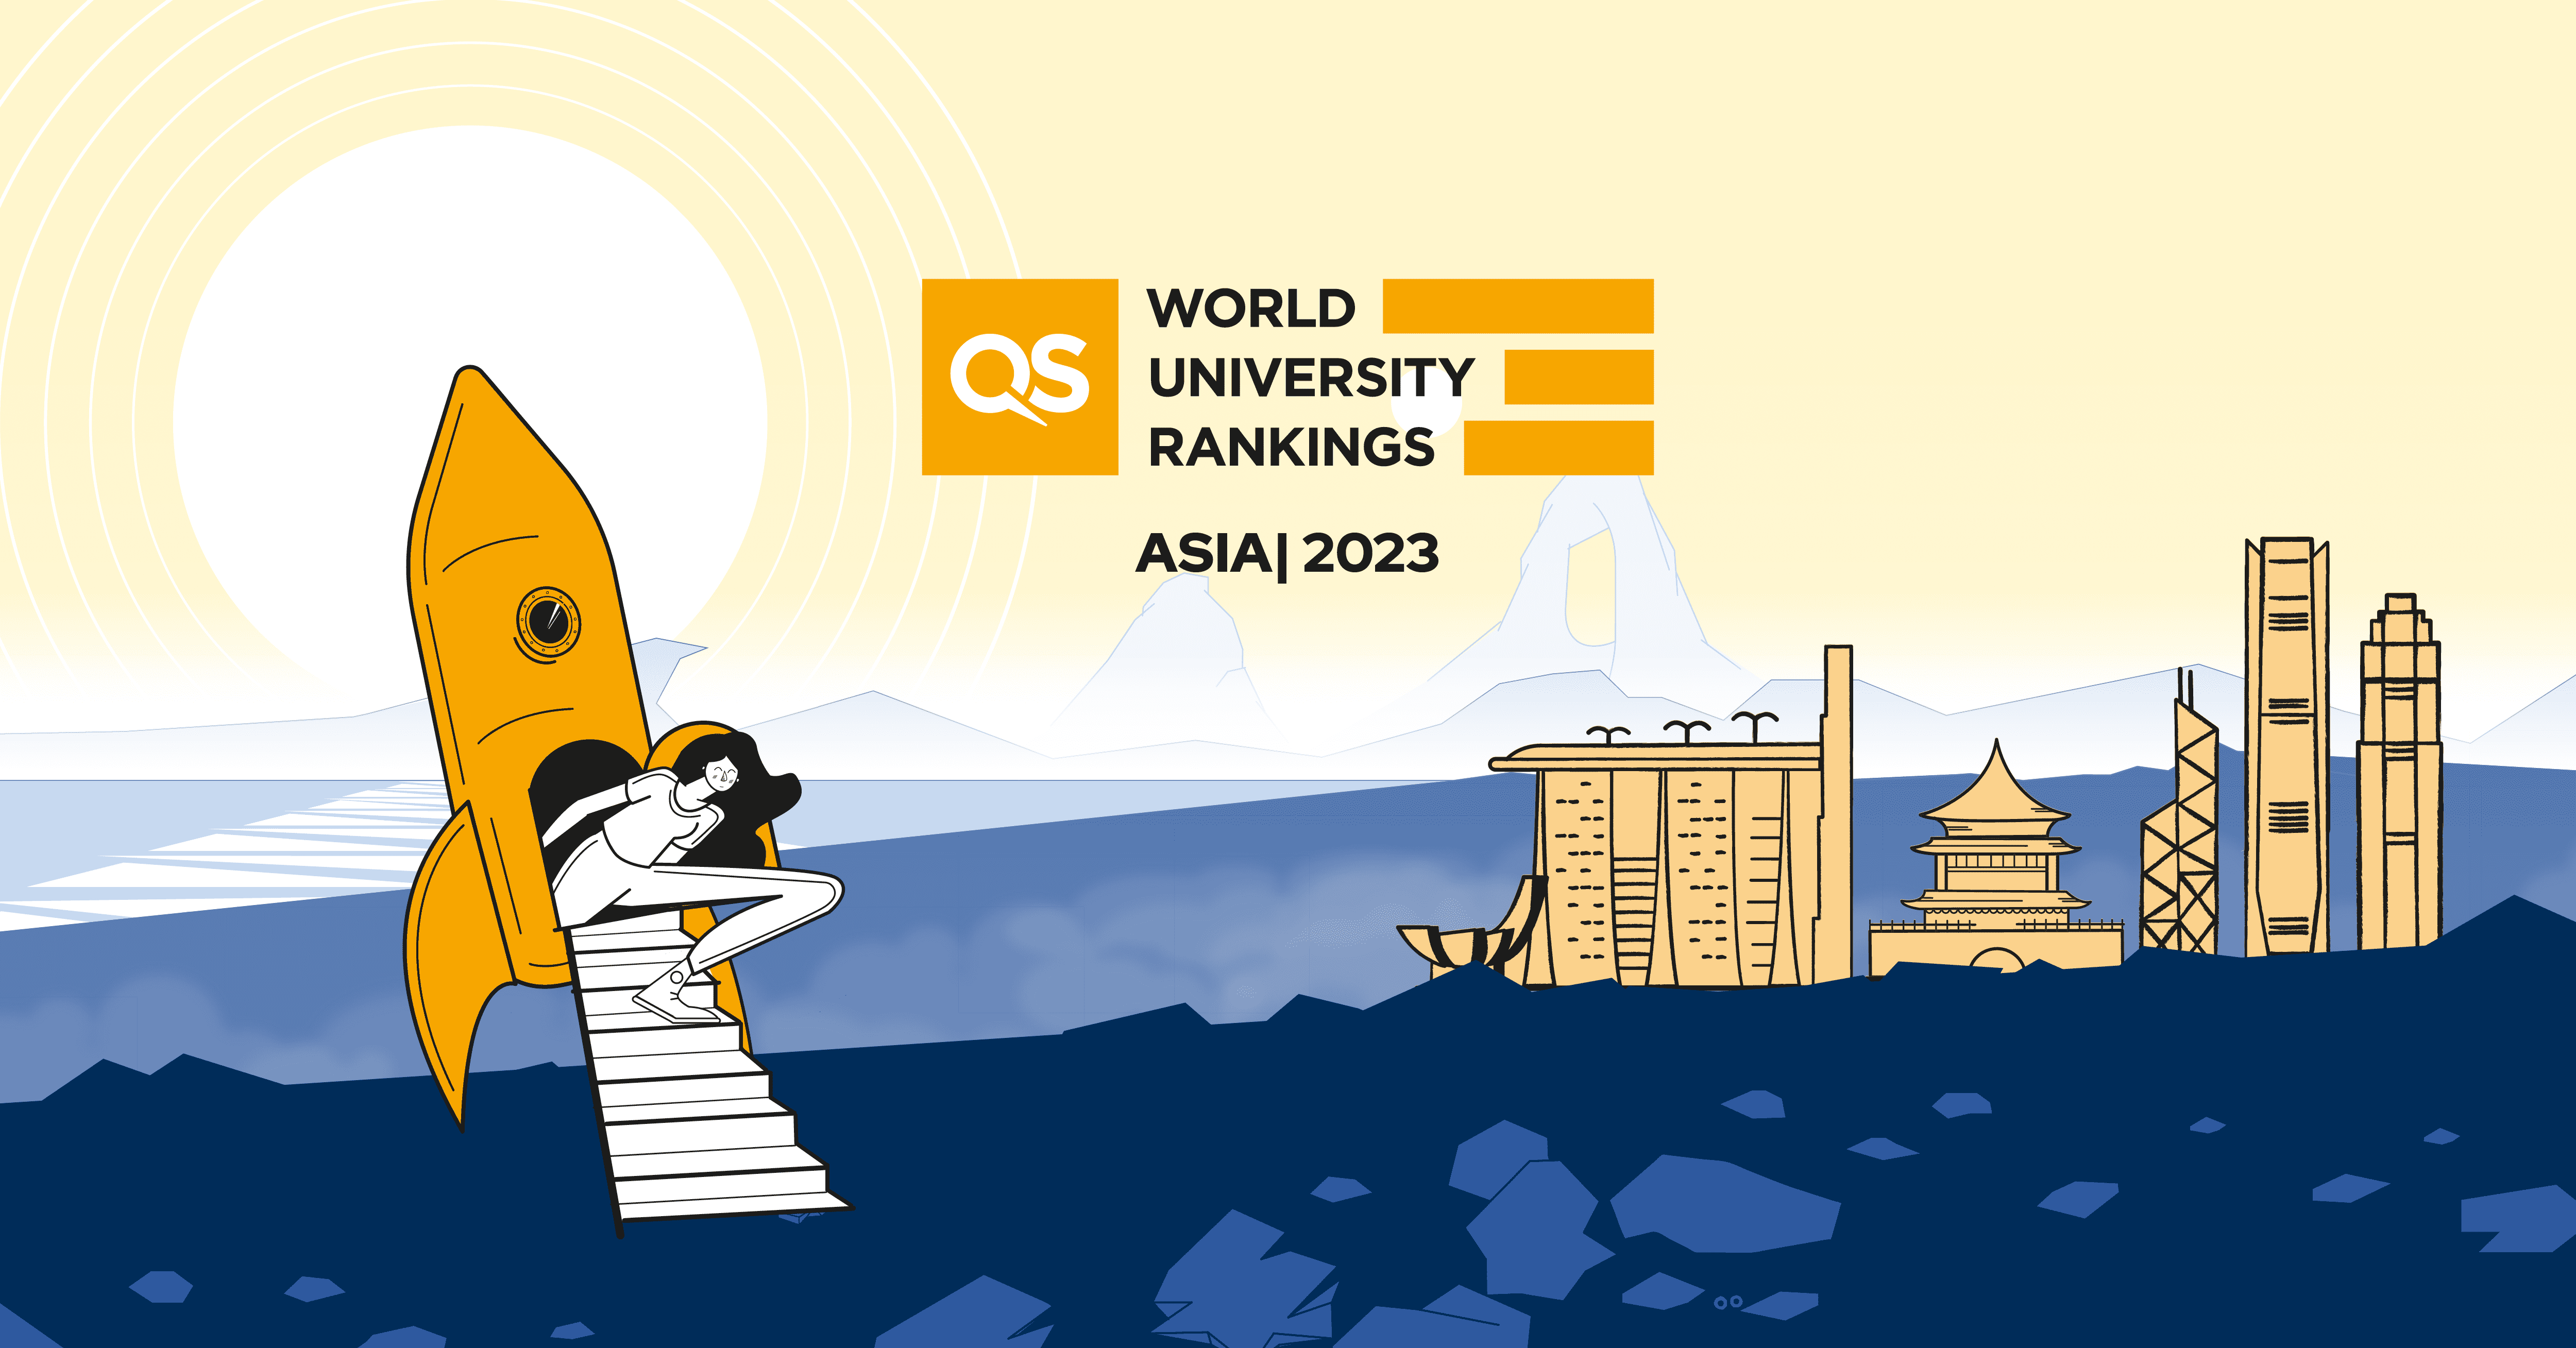 Ualikhanov University продолжает улучшать свои позиции в мировых рейтингах.